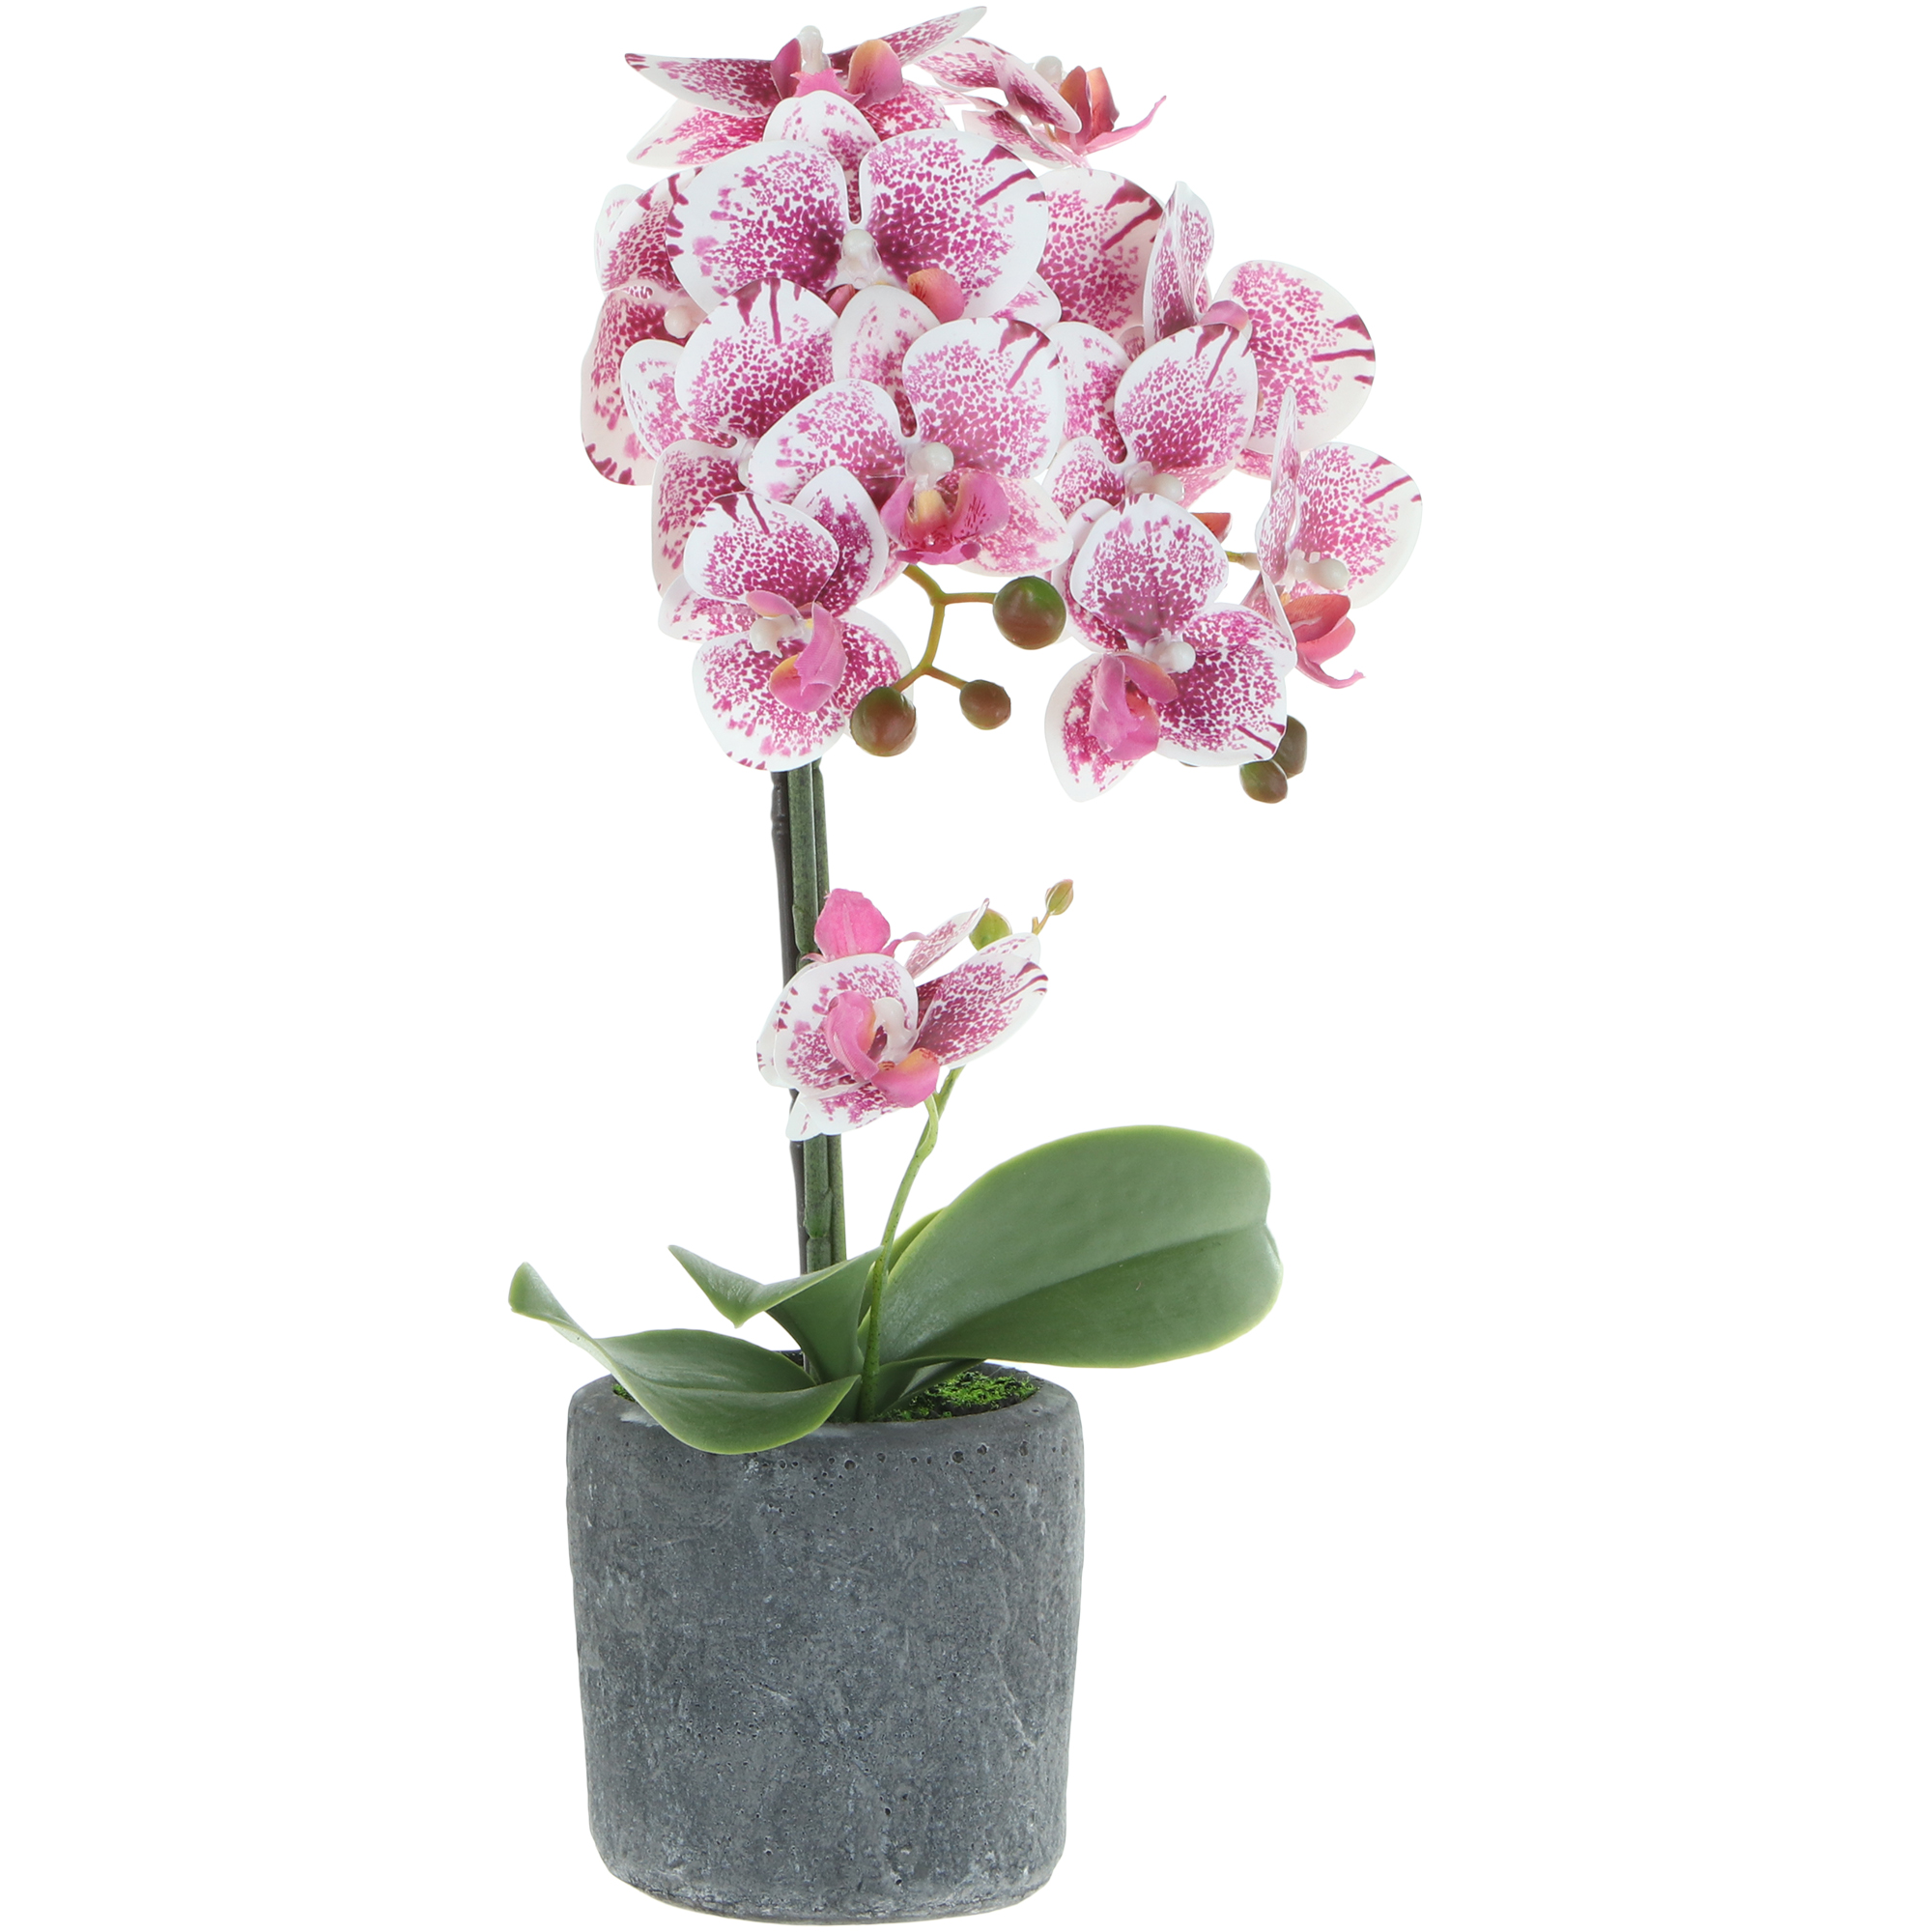 Цветок искусственный в горшке Fuzhou Light орхидея бело-розовая, 3 цвета 42 см искусственный ок dpi орхидея 72 см кремово розовая